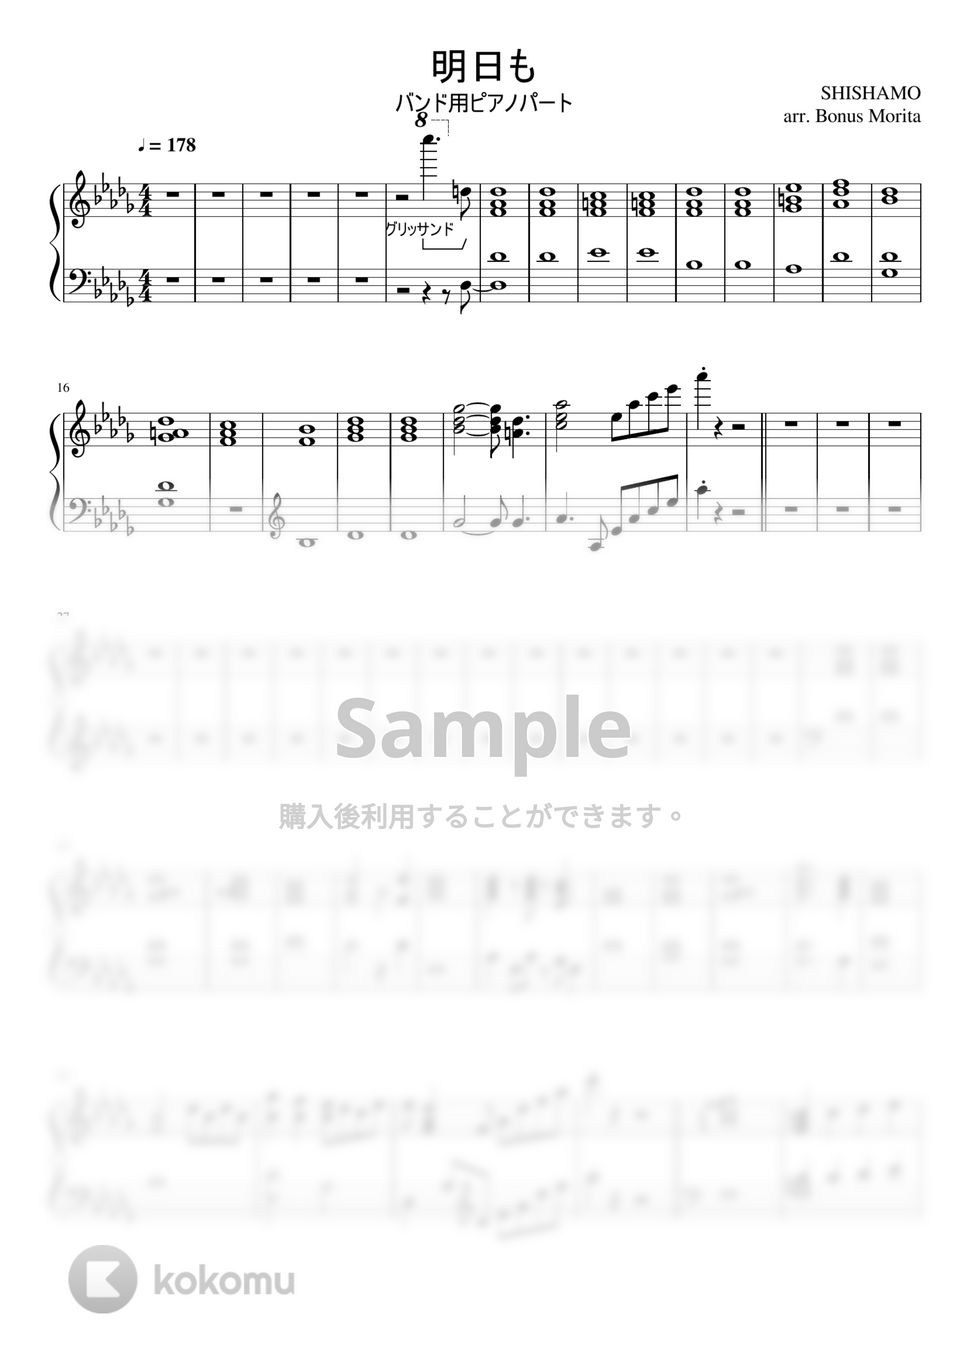 SHISHAMO - 明日も (宮崎朝子作曲 / バンド用ピアノパート譜) by ボーナス森田